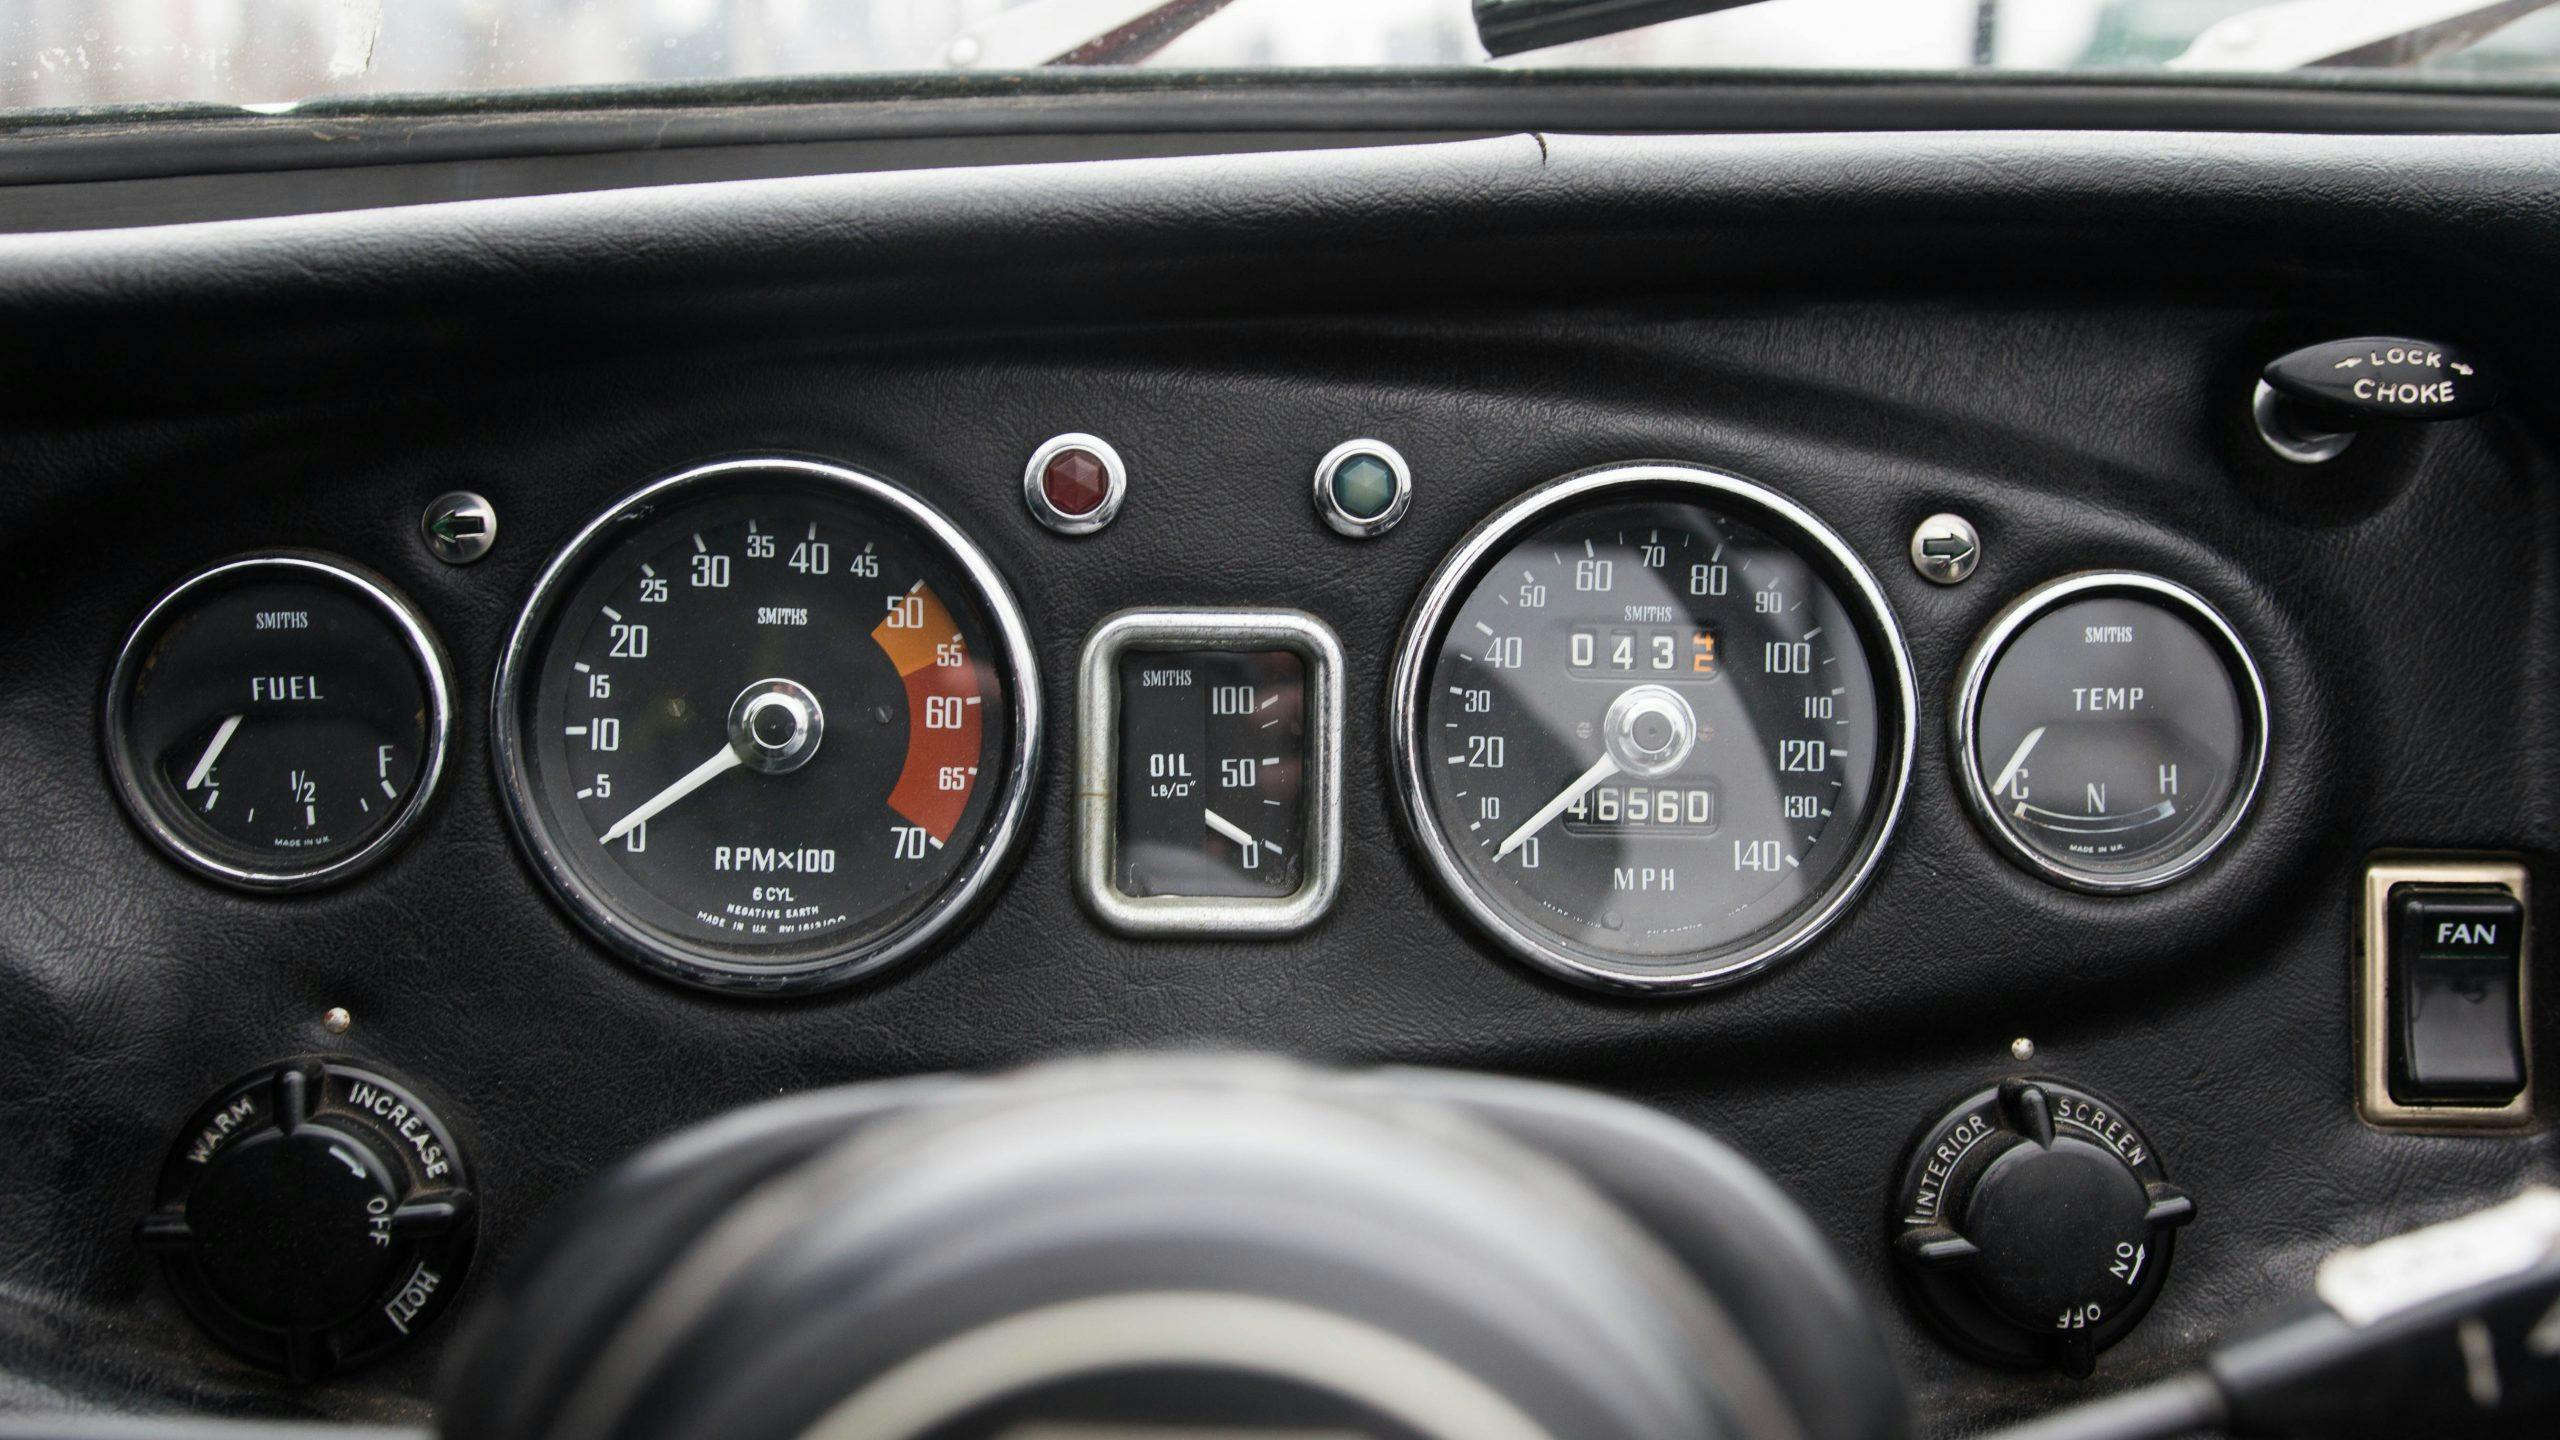 1969 MG MGC gauges detail